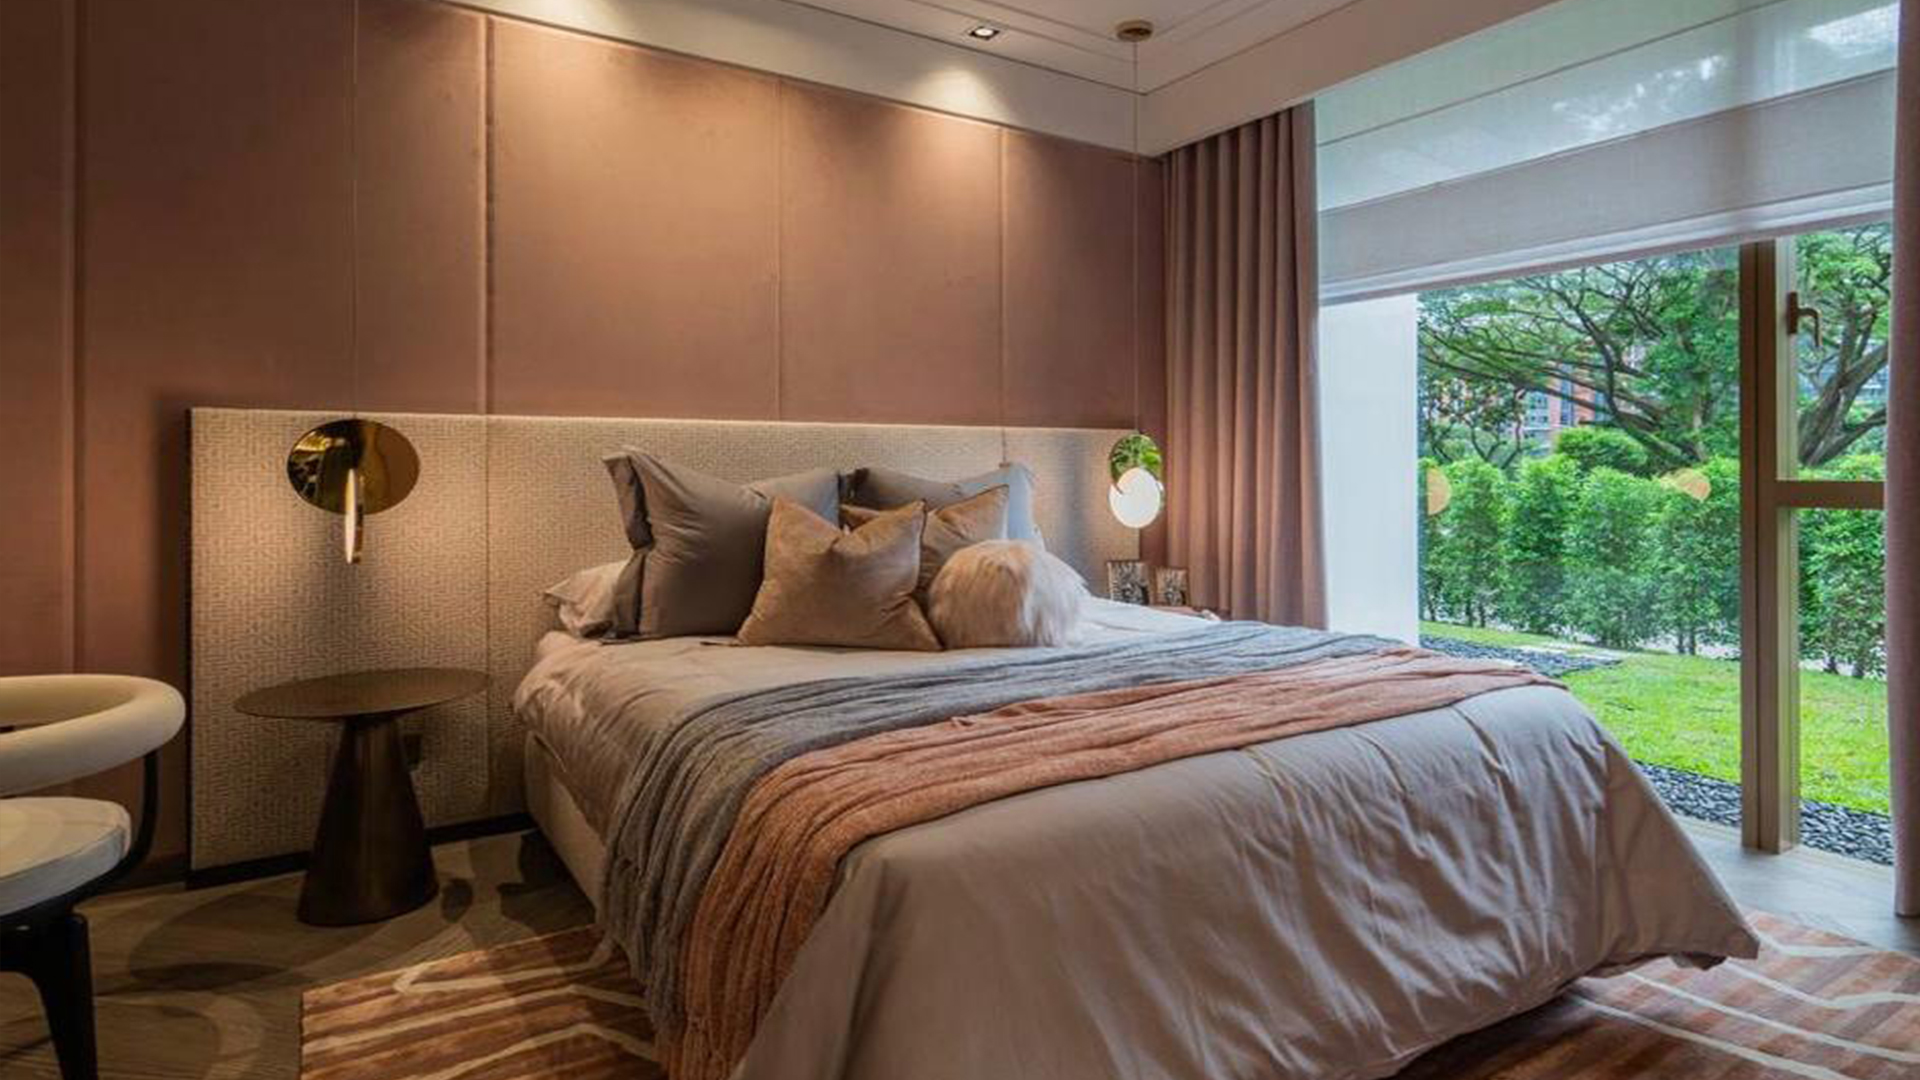 KLIMT Cairnhill Singapore luxury apartment property